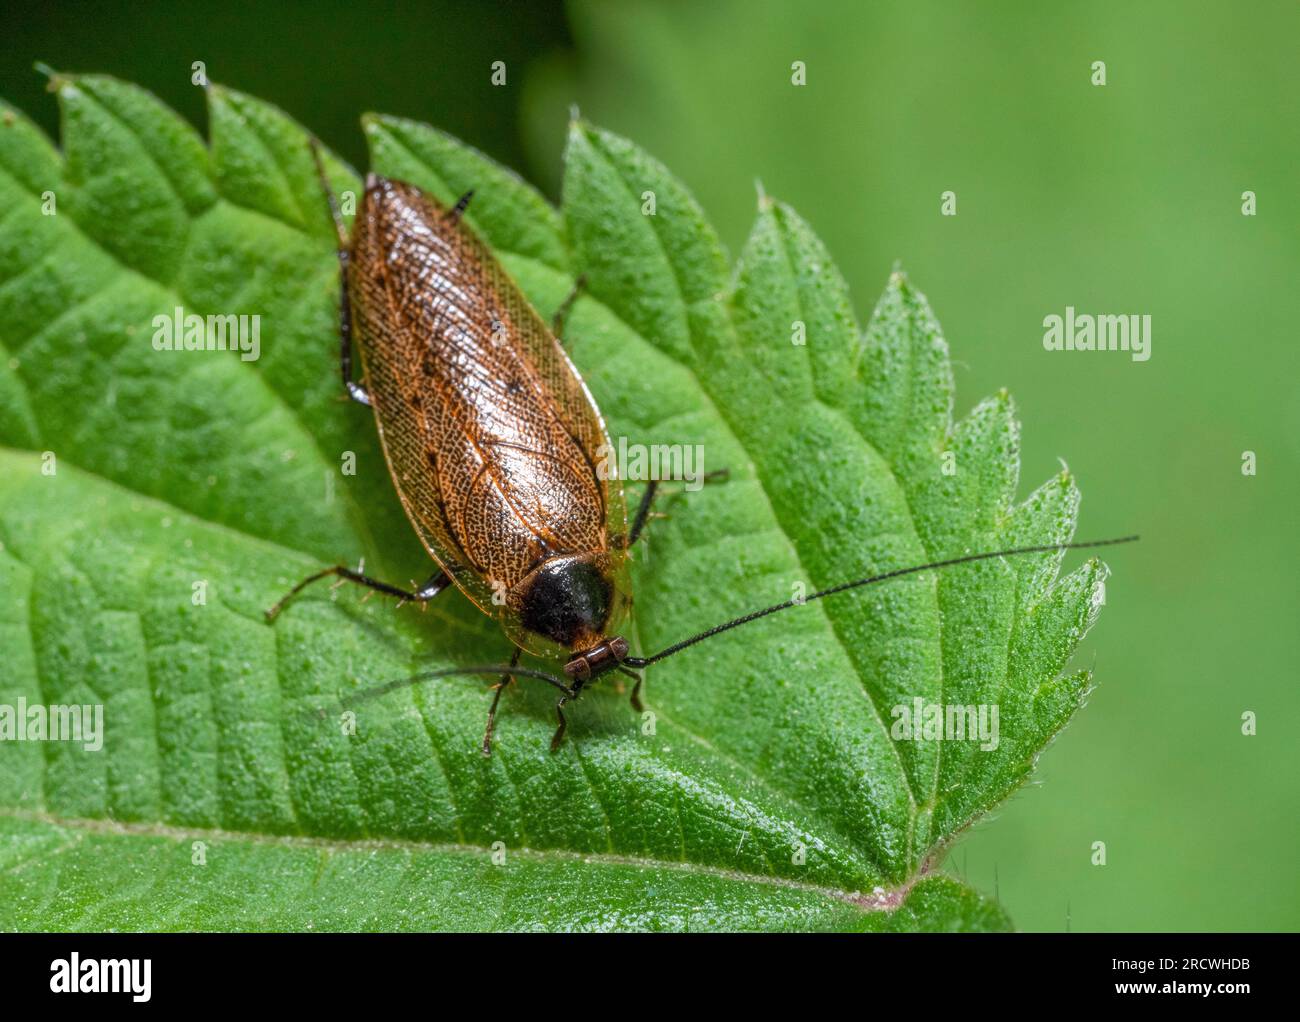 Makroaufnahme einer dunklen Kakerlake auf grünem, stechendem Nesselblatt, von oben gesehen Stockfoto